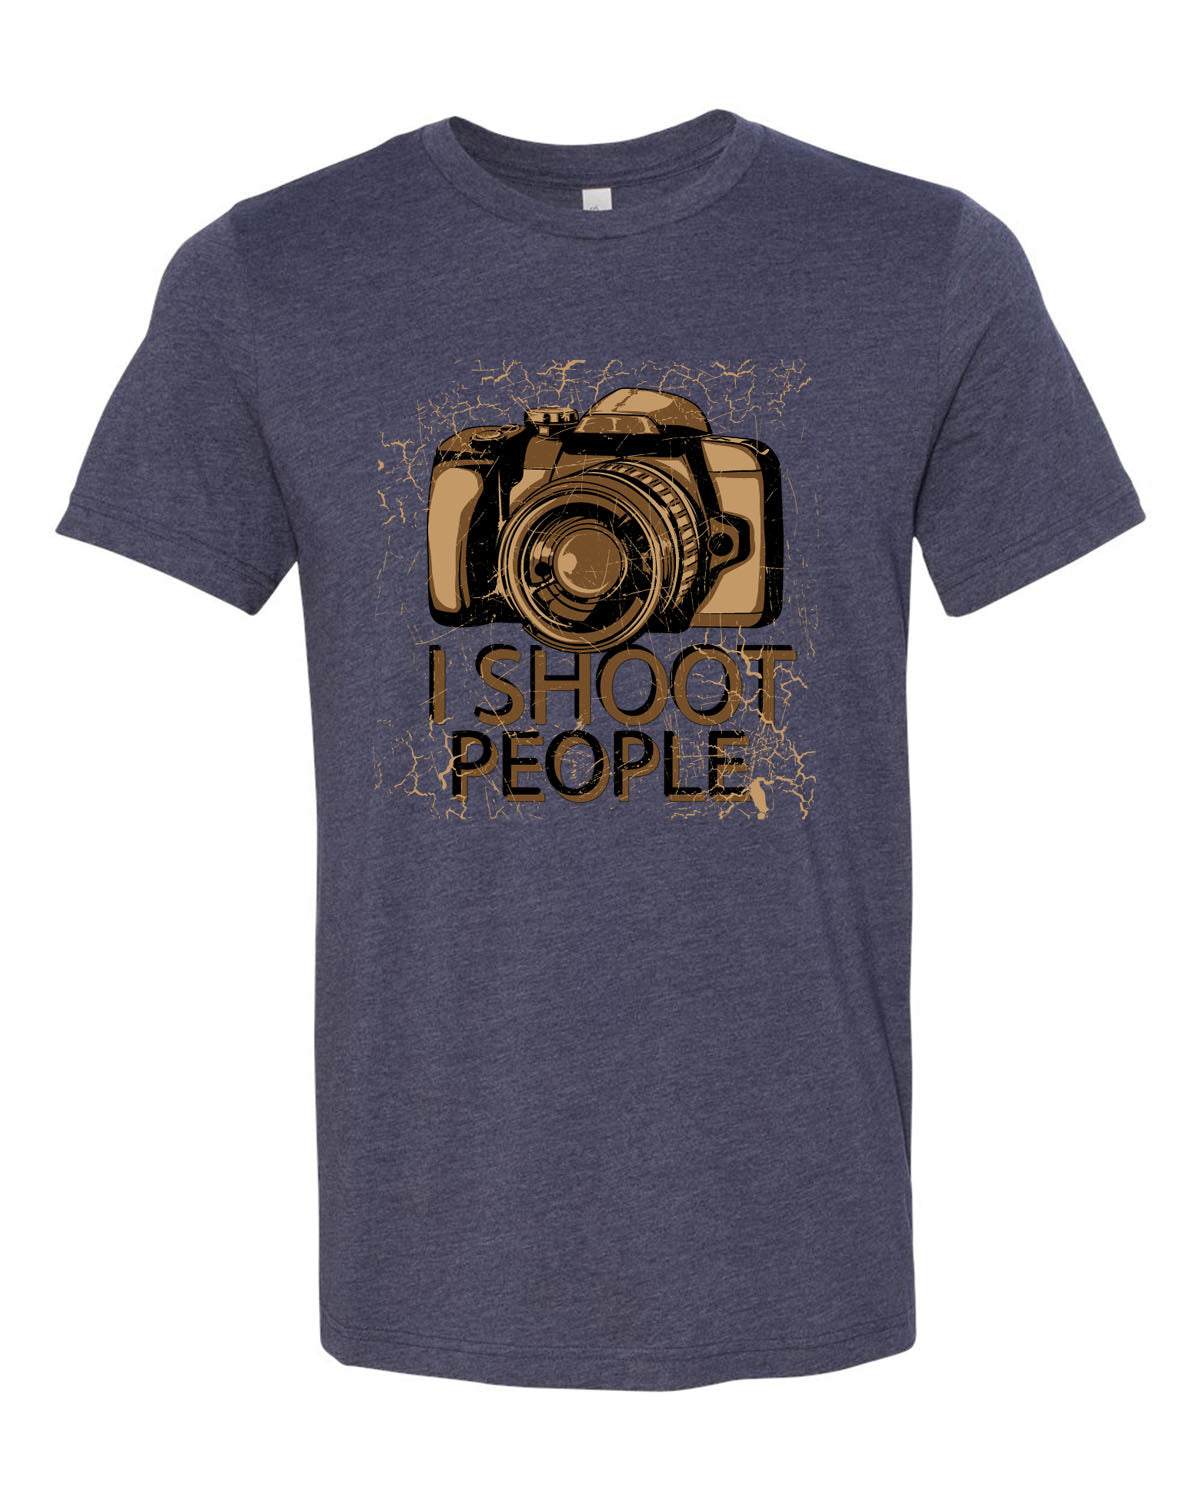 Photographer T-Shirt